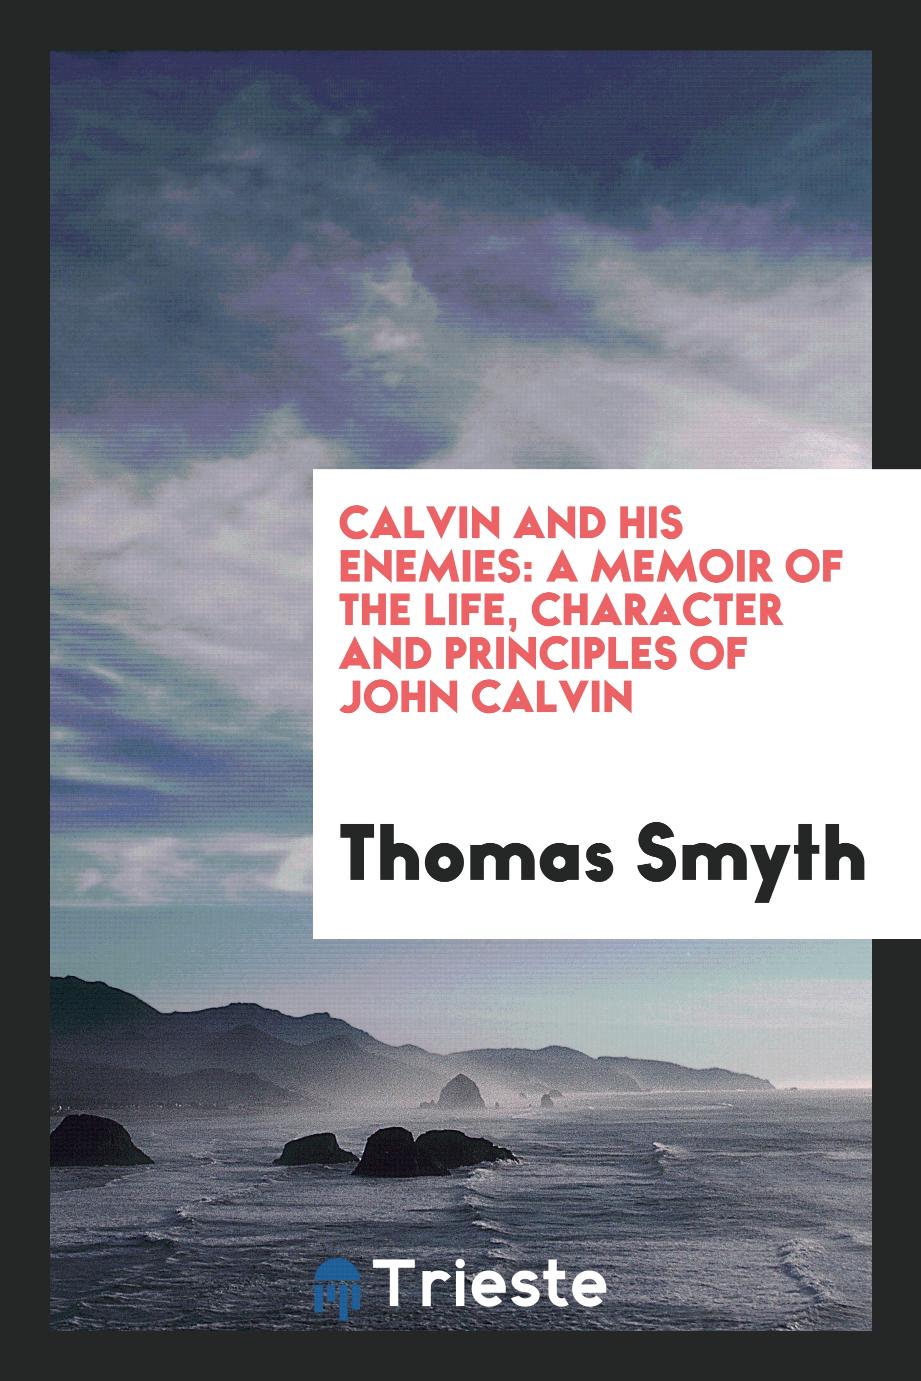 Calvin and his enemies: a memoir of the life, character and principles of John Calvin